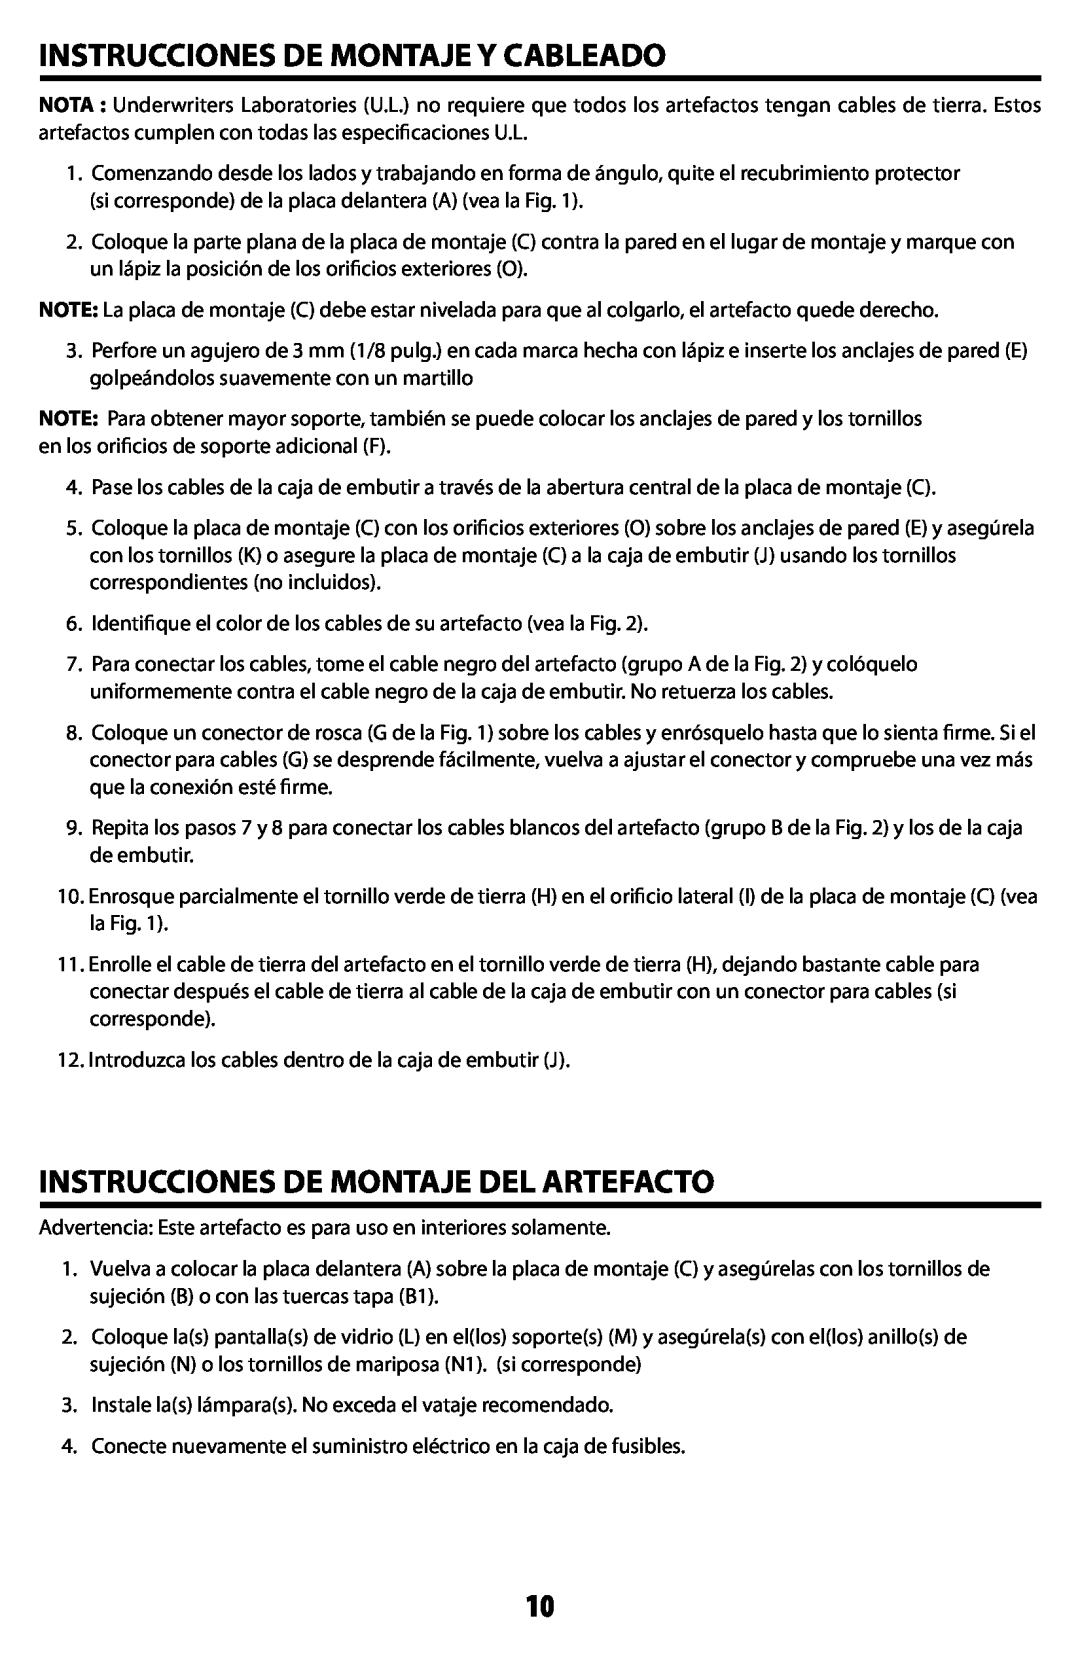 Westinghouse W-351 owner manual Instrucciones De Montaje Y Cableado, Instrucciones De Montaje Del Artefacto 